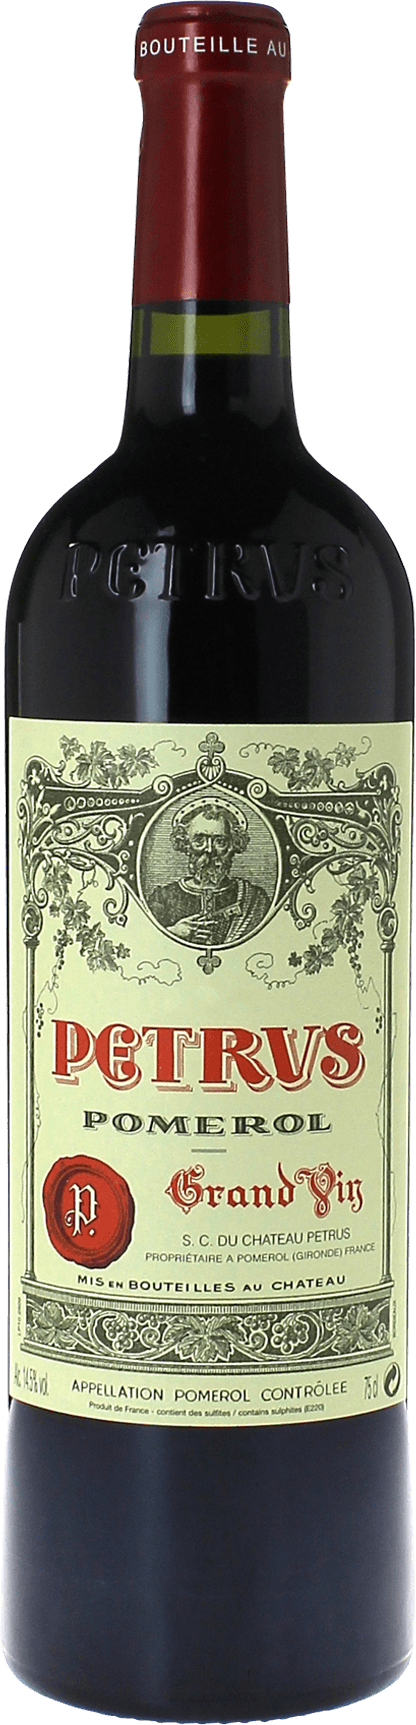 Petrus 1993  Pomerol, Bordeaux rouge